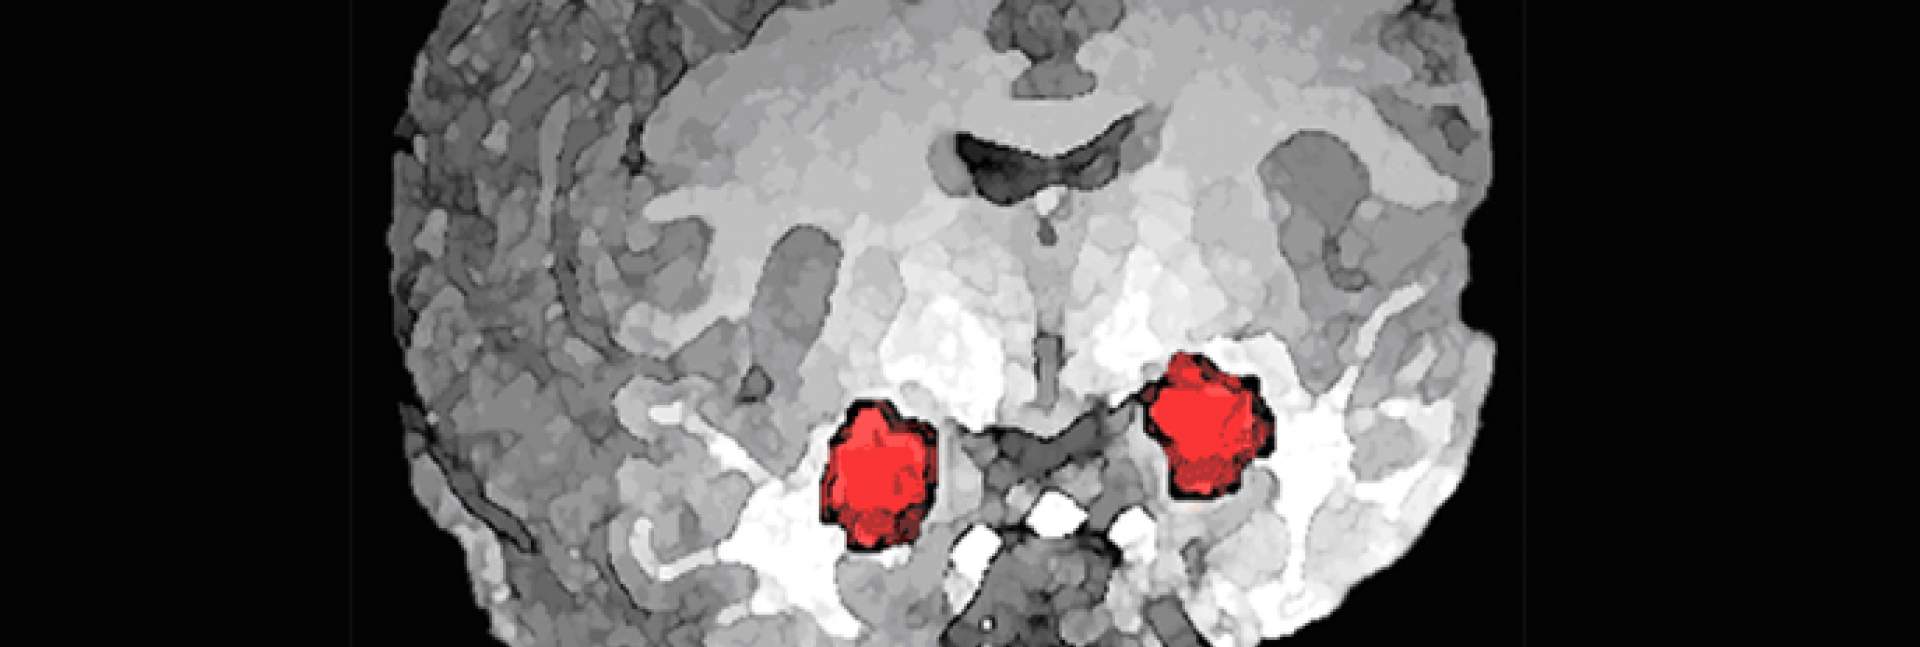 האמיגדלה (באדום) – מבנה מוחי דמוי שקד הנמצא בעומק האונה הרקתית של יונקים רבים, ובהם האדם. מעורבת בתהליכי למידה אסוציאטיבית שבהם נוצרת זיקה בין קלט חושי מסוים לחוויות חיוביות או שליליות